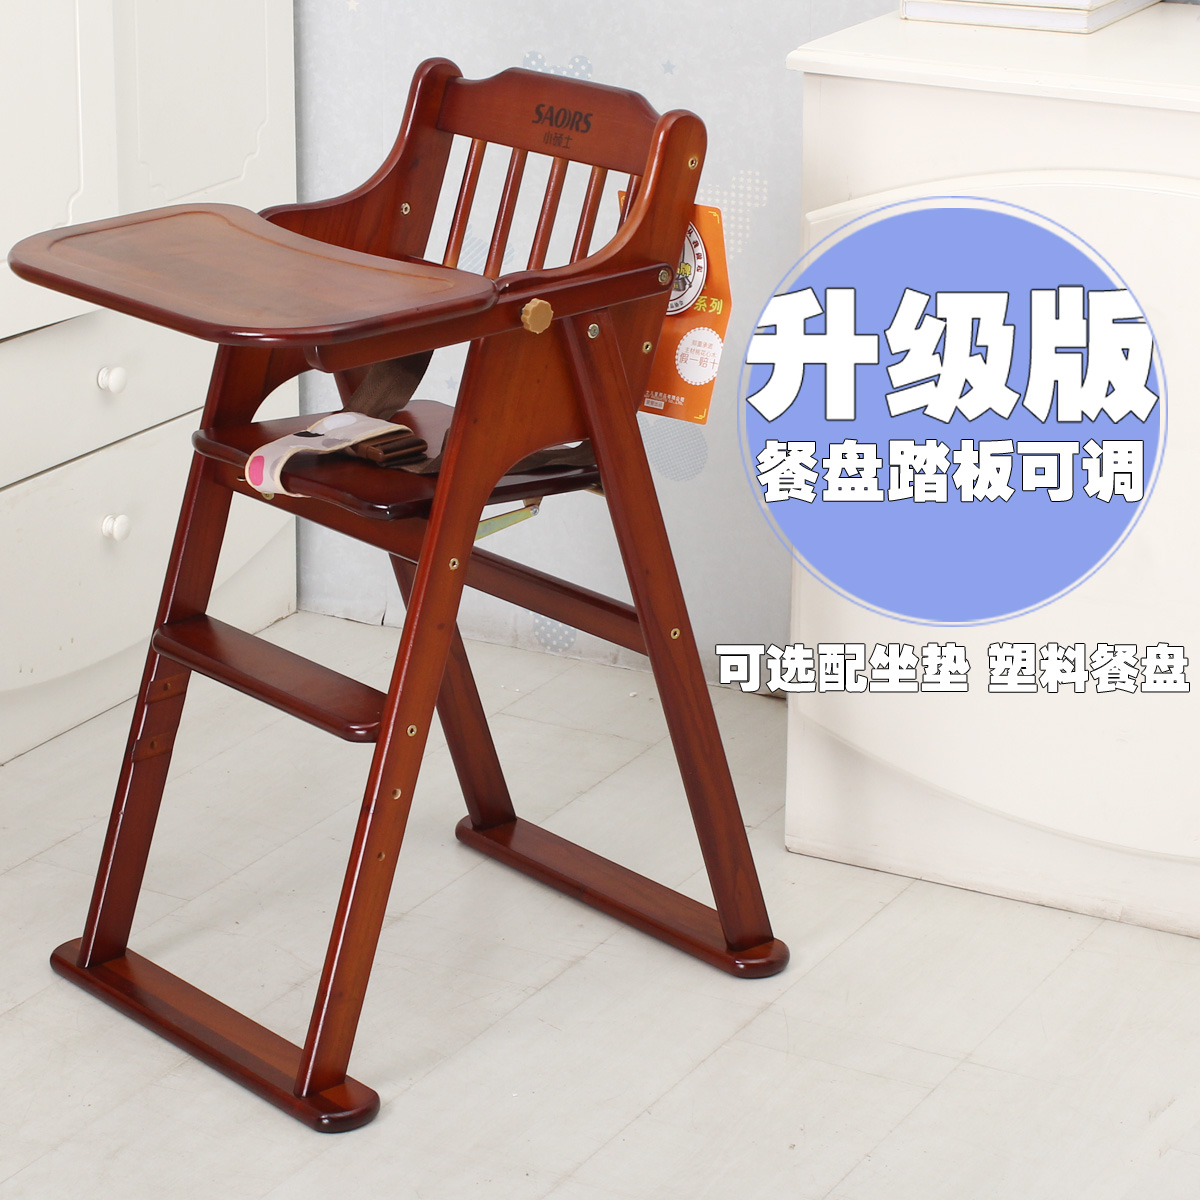 小硕士实木可折叠婴儿餐椅便携式宝宝餐桌椅多功能儿童餐椅sk326t